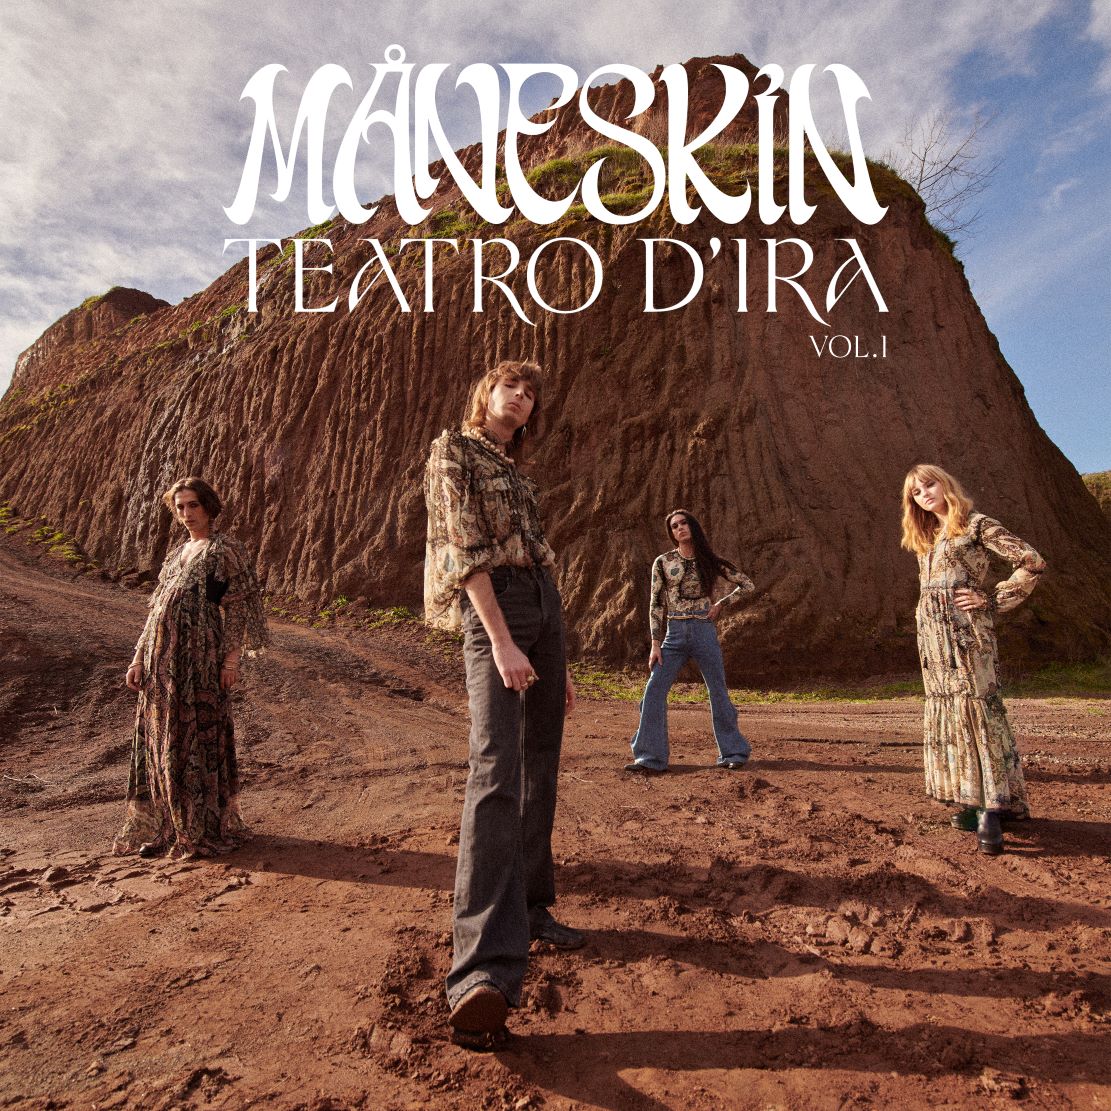 maneskin--album-e-tour-COVER_TEATRO_D'IRA_VOL_I3333.jpg